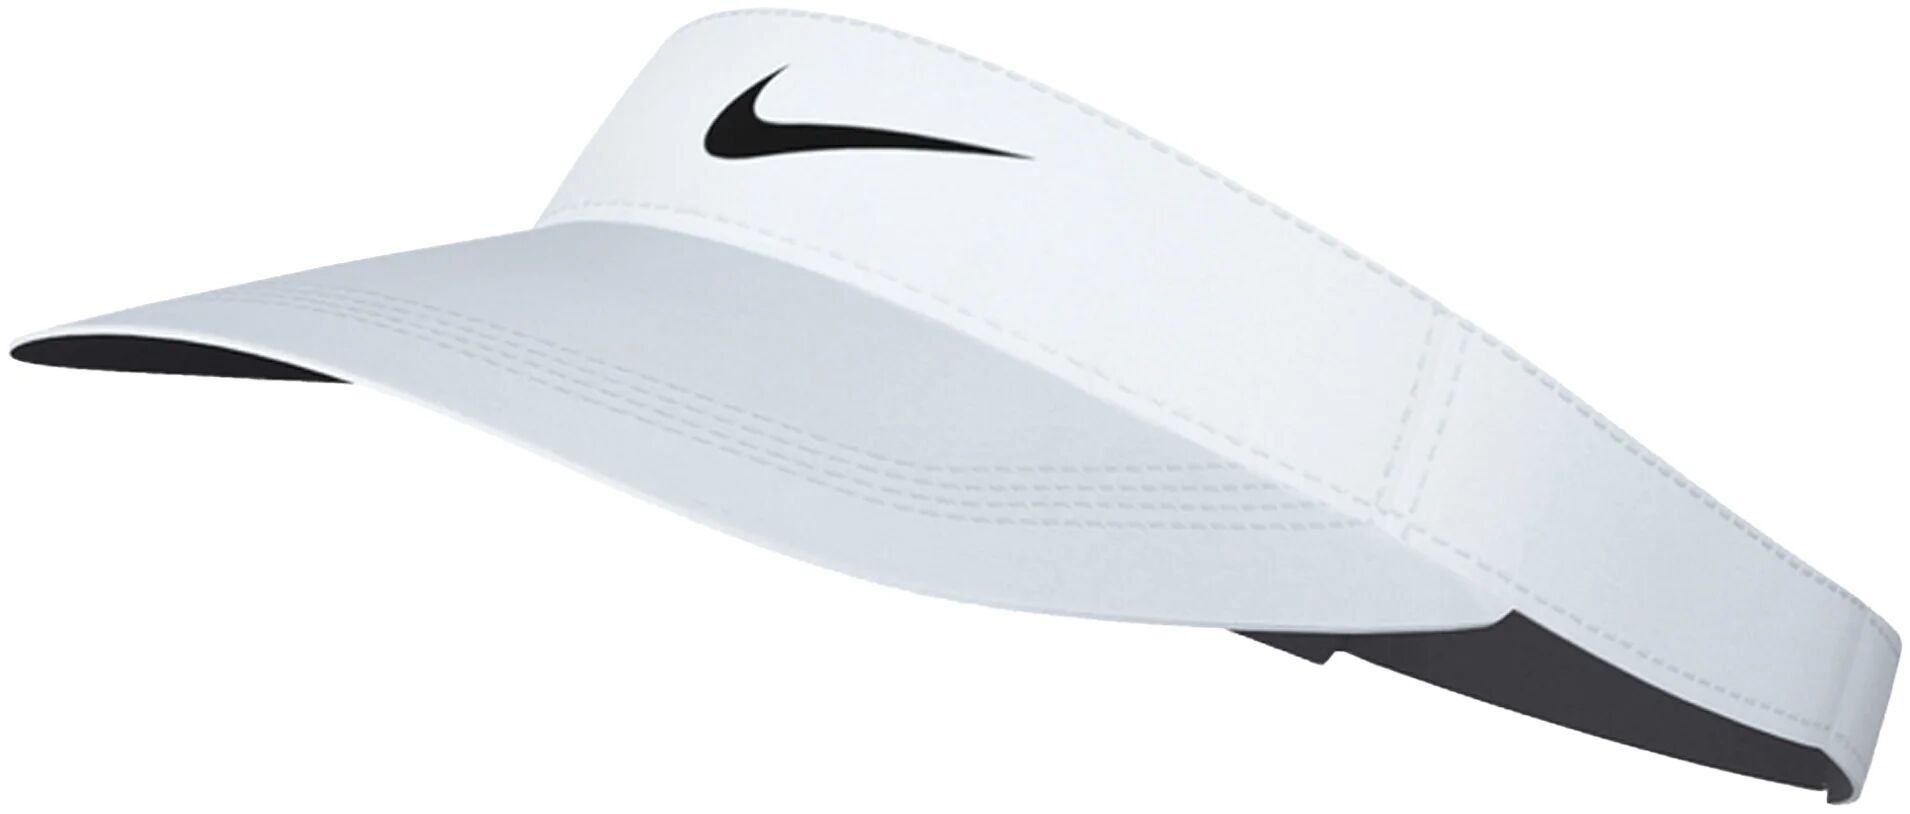 Nike Dri-FIT Ace Swoosh Men's Golf Visor - White, Size: Small/Medium